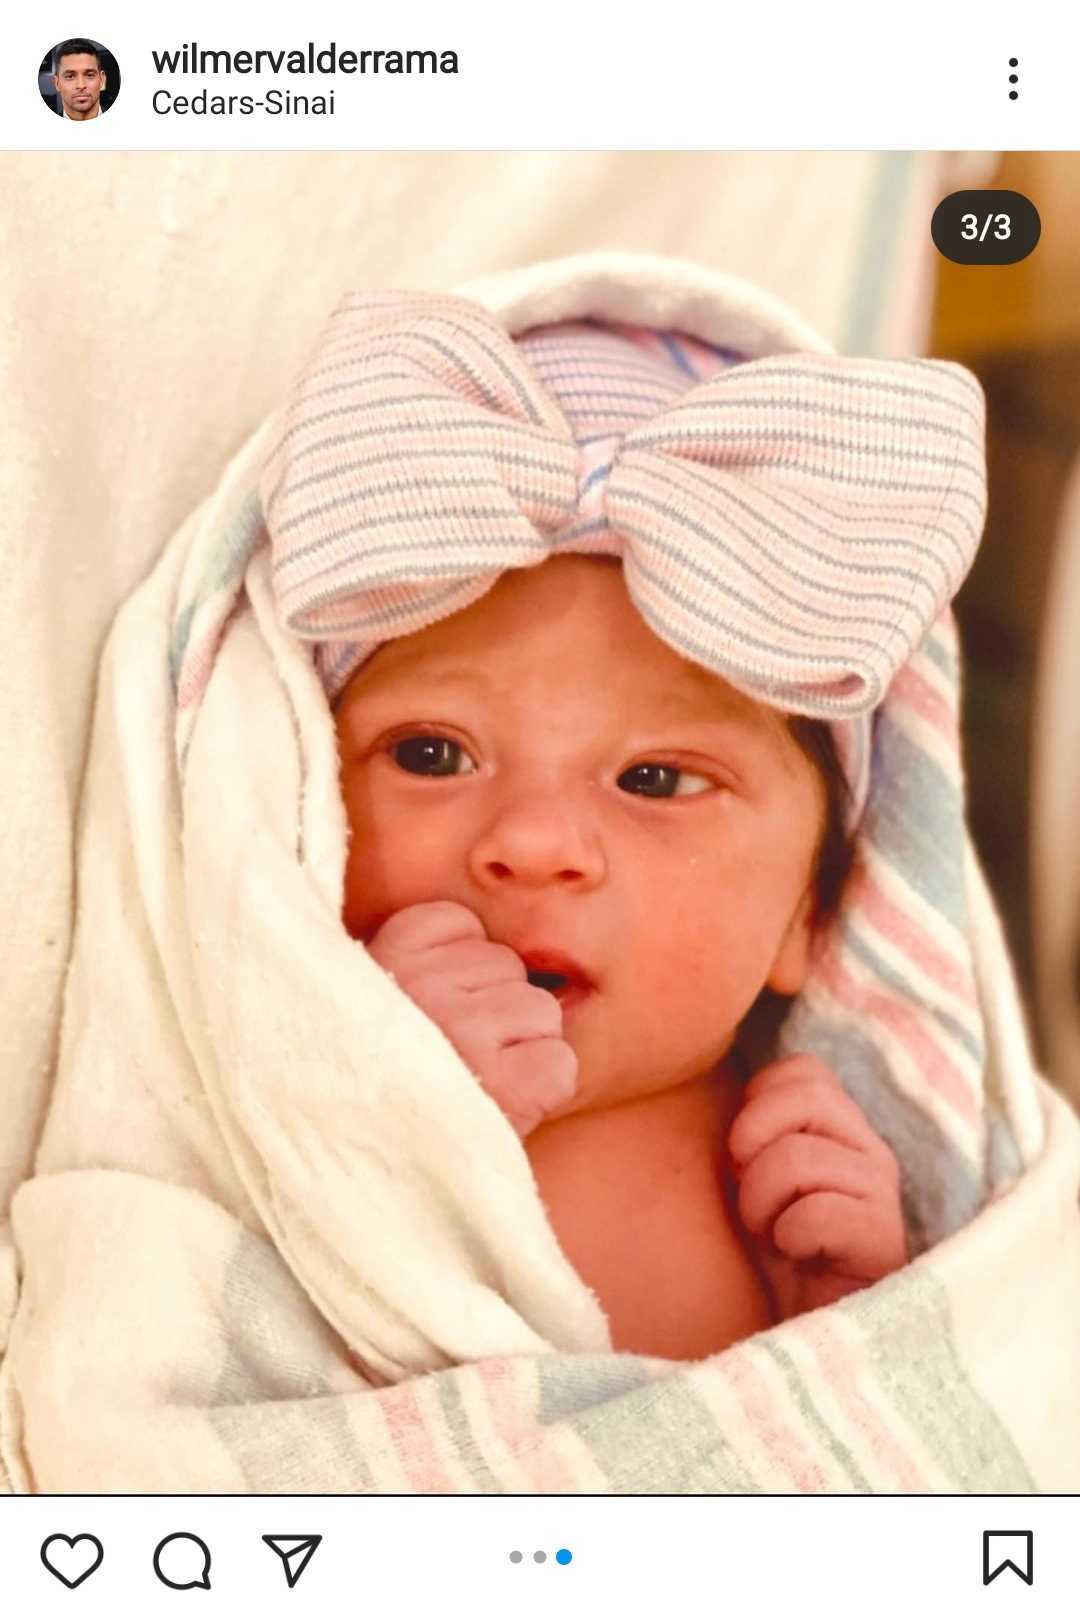 Primera foto de la hija recién nacida de Amanda Pacheco y Wilmer Valderrama | Foto: Captura de Instagram/wilmervalderrama.